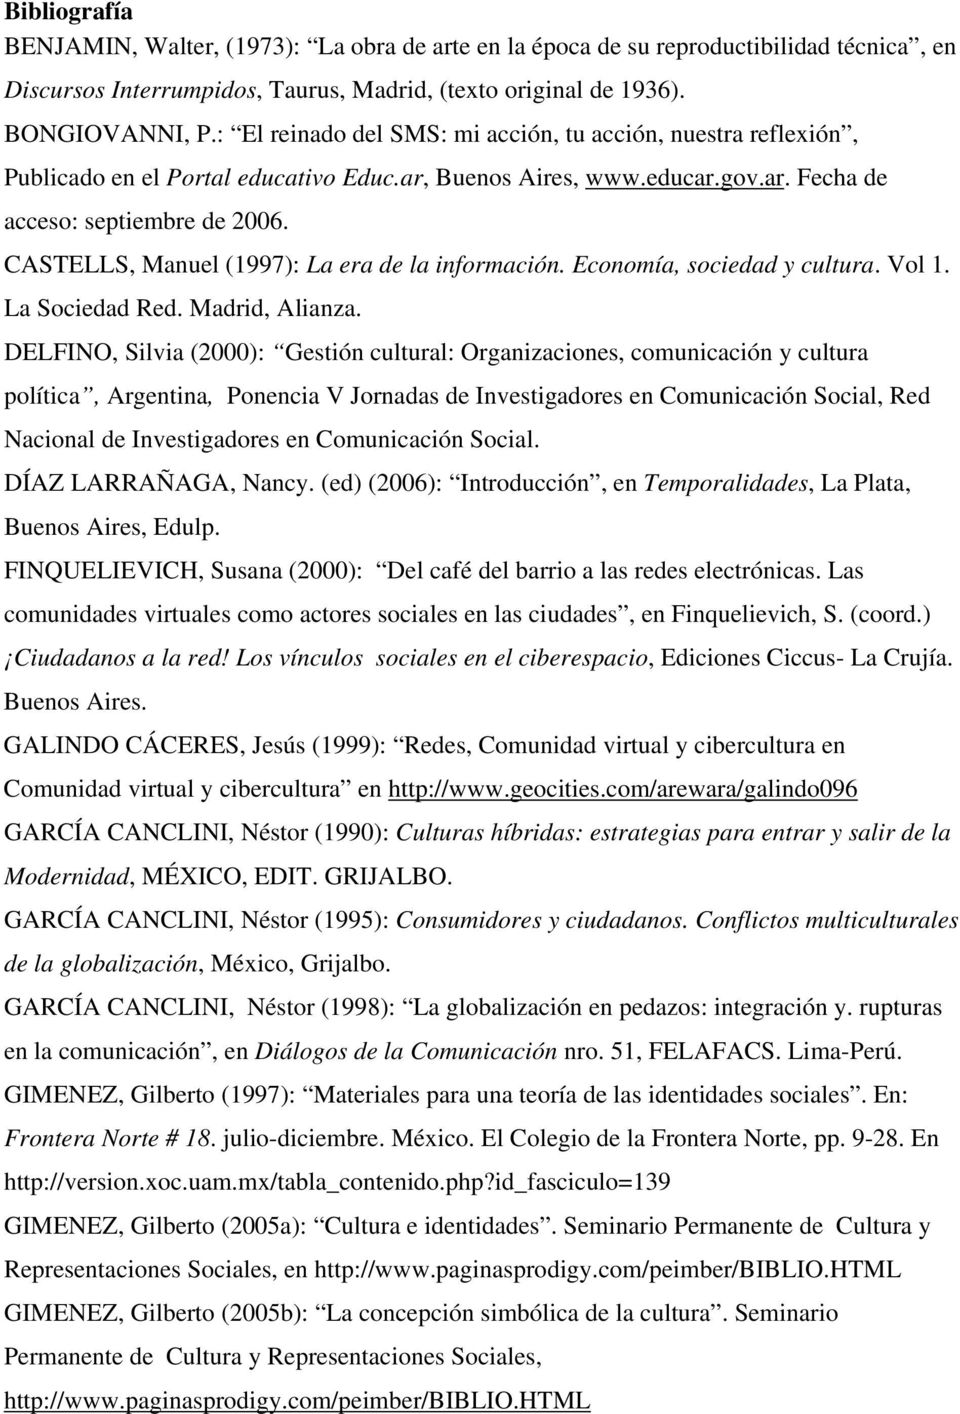 CASTELLS, Manuel (1997): La era de la información. Economía, sociedad y cultura. Vol 1. La Sociedad Red. Madrid, Alianza.